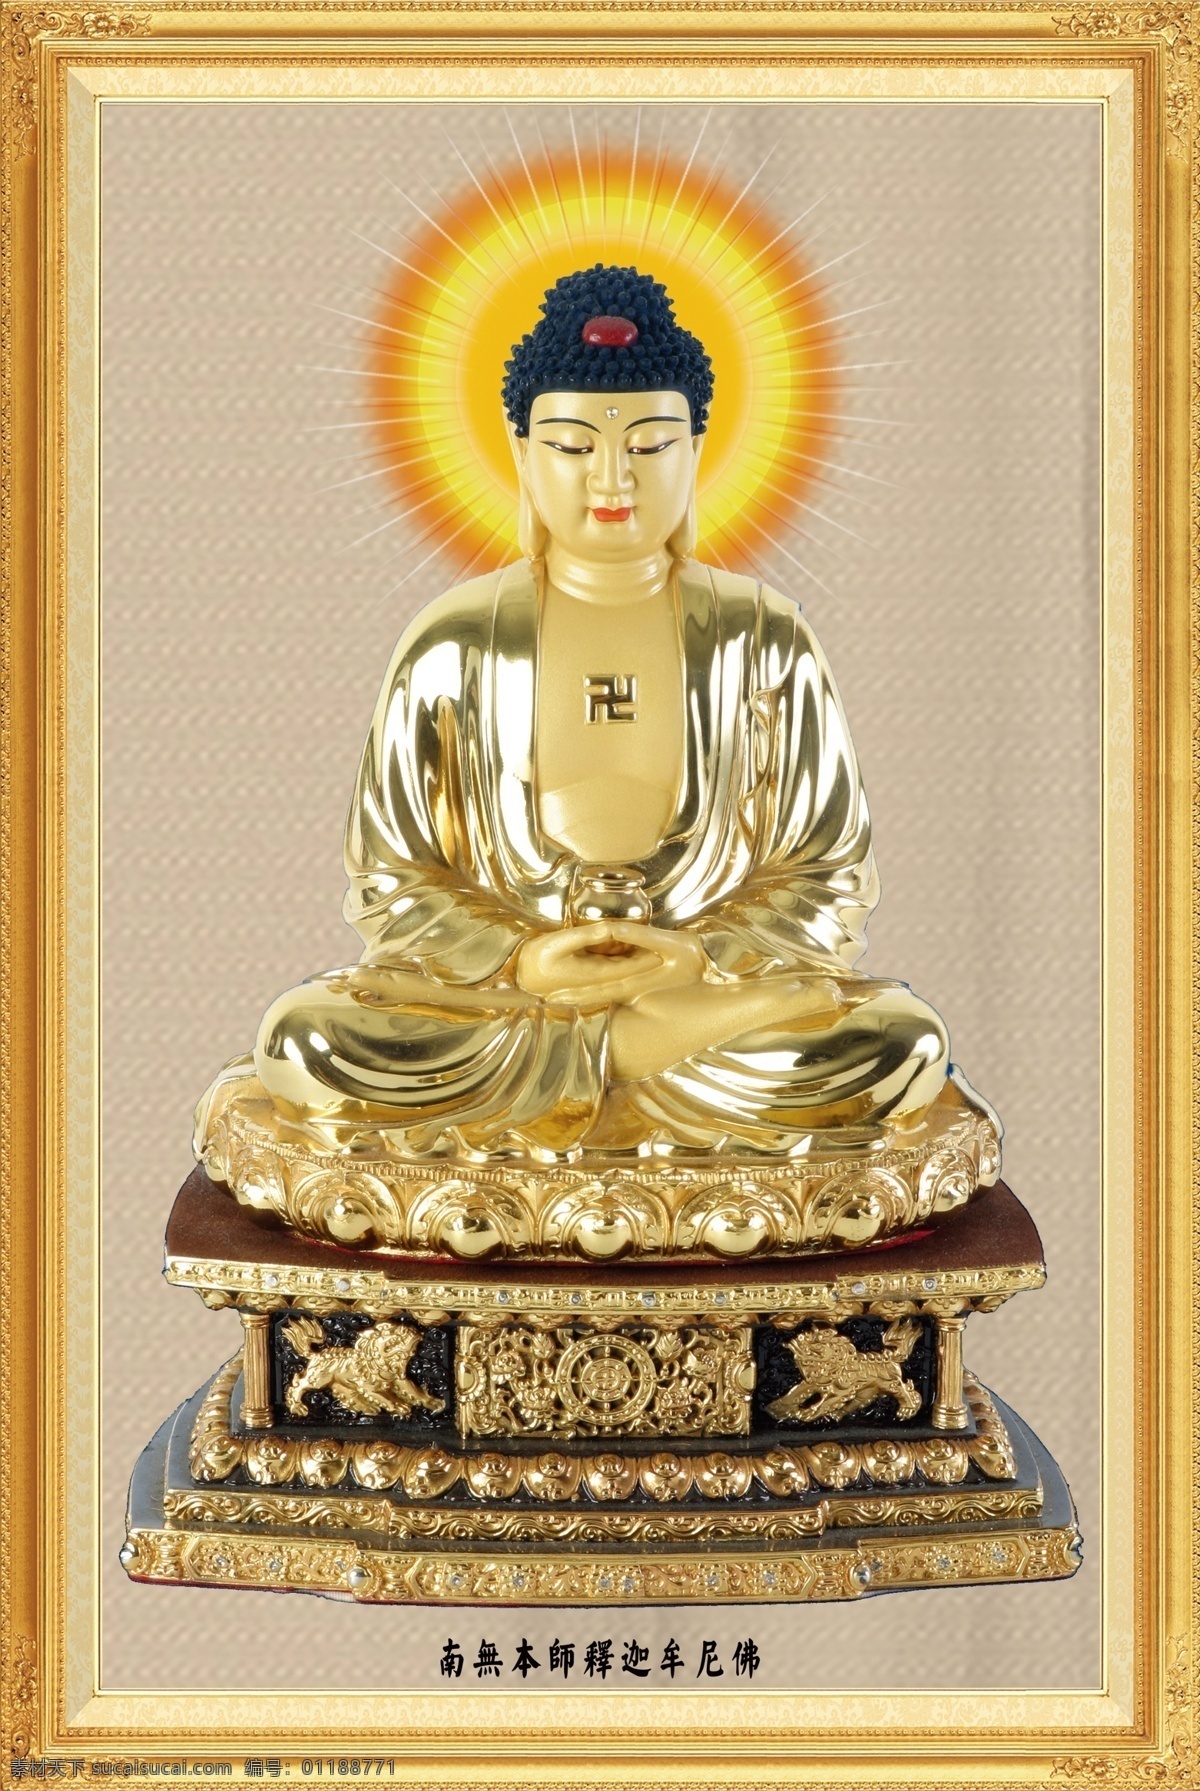 香岩寺佛像 佛像 如来 佛祖 观音 寺庙画 佛 其它类 室外广告设计